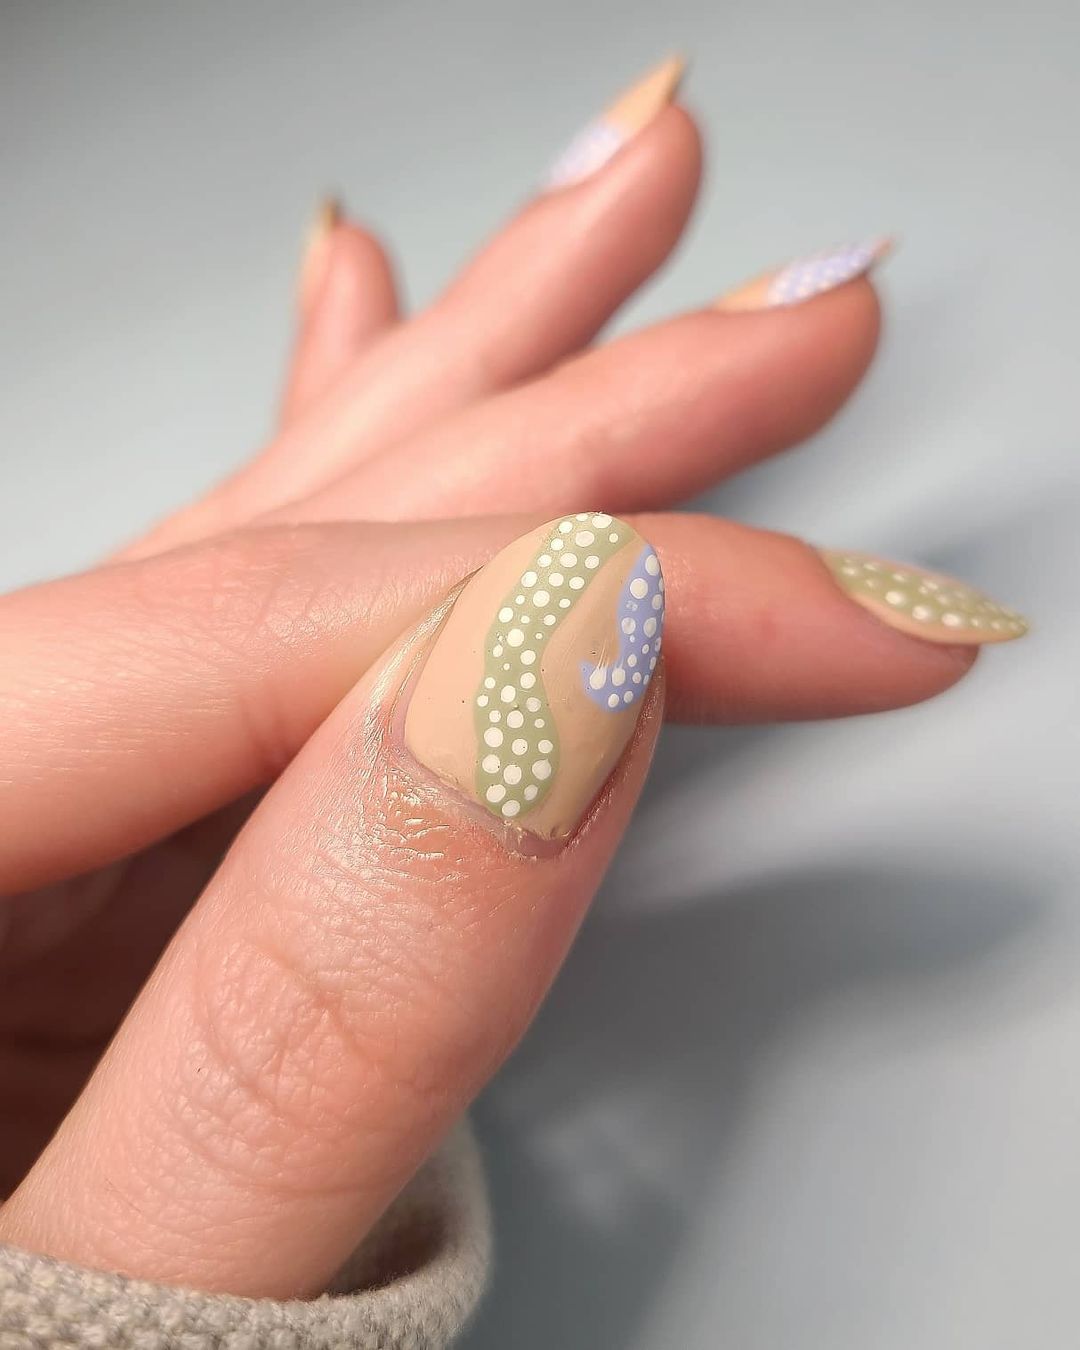 Jennifer Nails & Beauty - Louis Vuitton nails. #nailsofinstagram